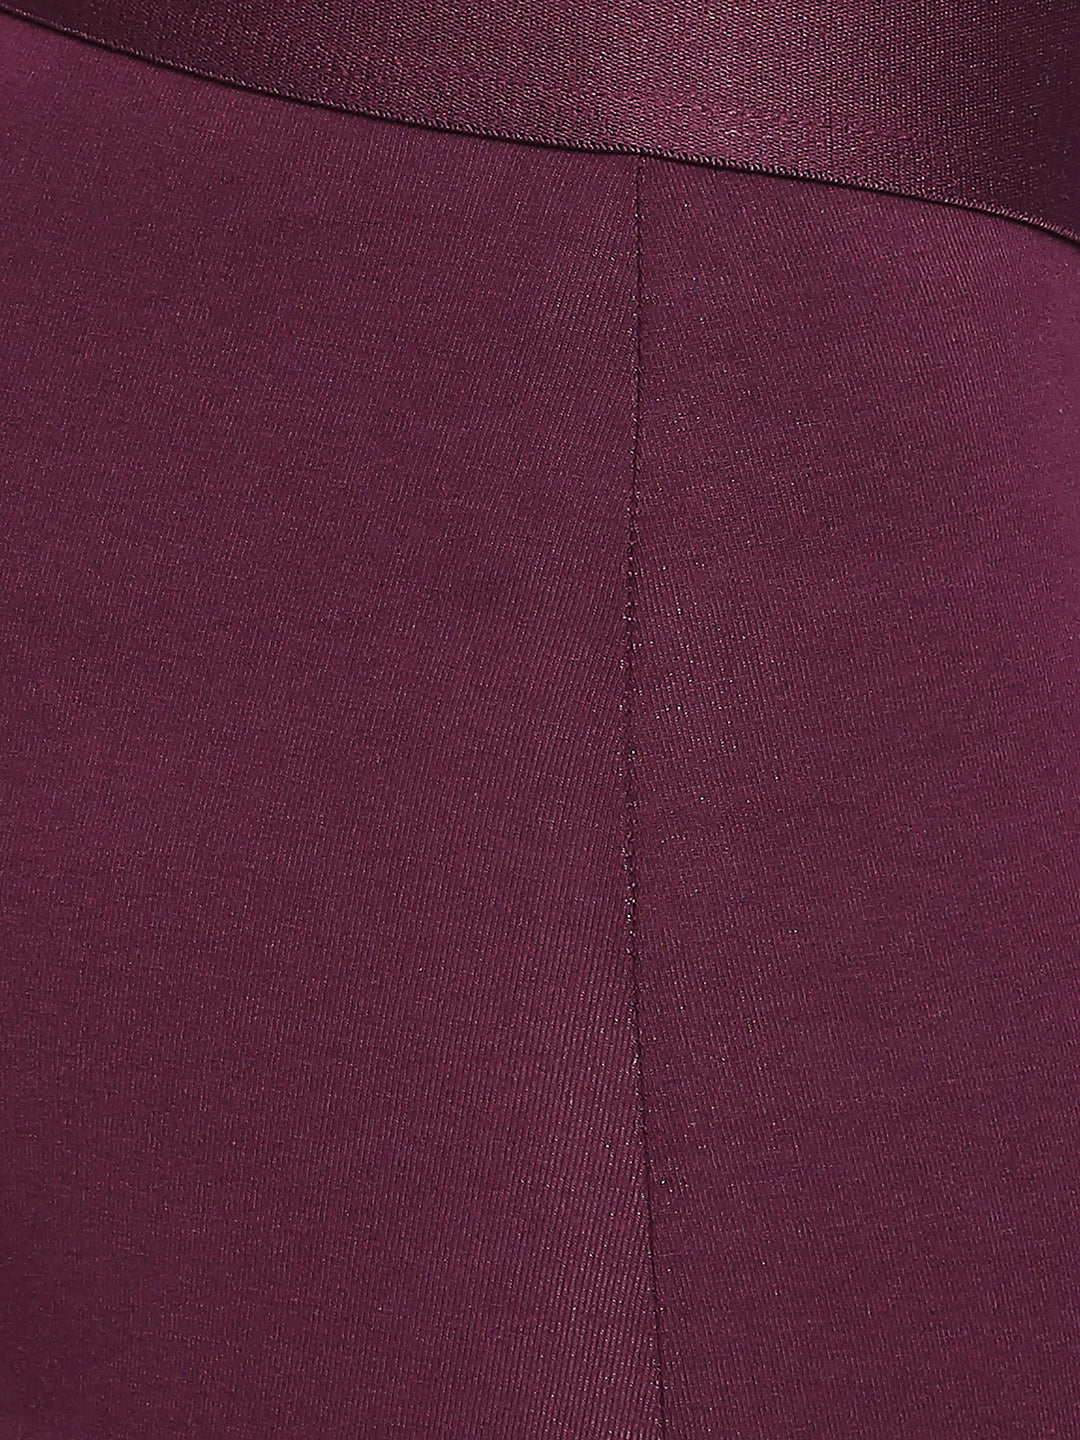 Men Cotton Blend Purple Trunk- Underjeans by Spykar